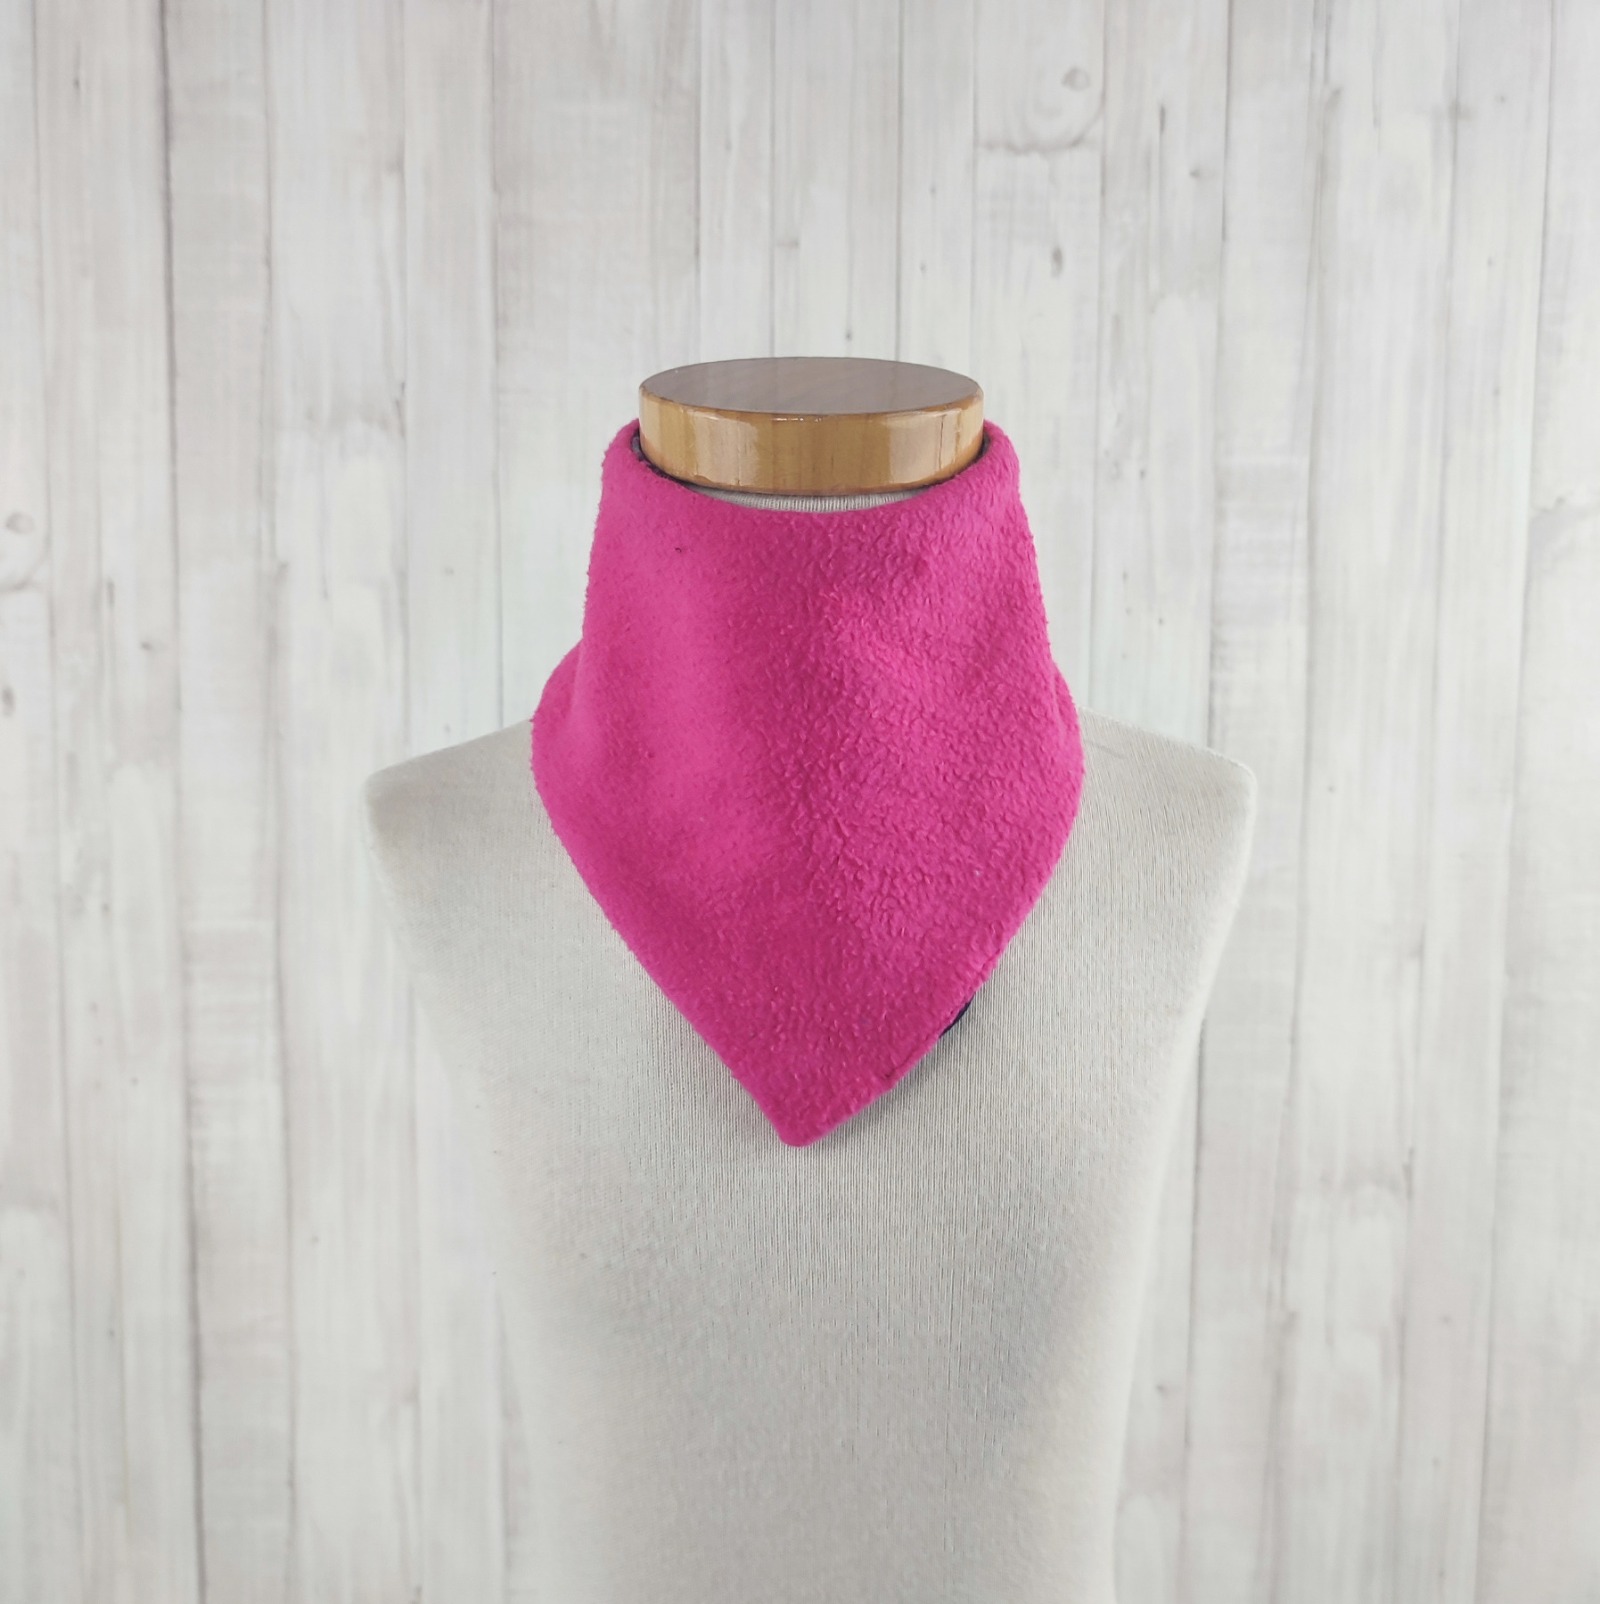 Halstuch Dreieckstuch für kleine Mädchen aus Jersey und Fleece - schwarz grau pink - gemustert mit